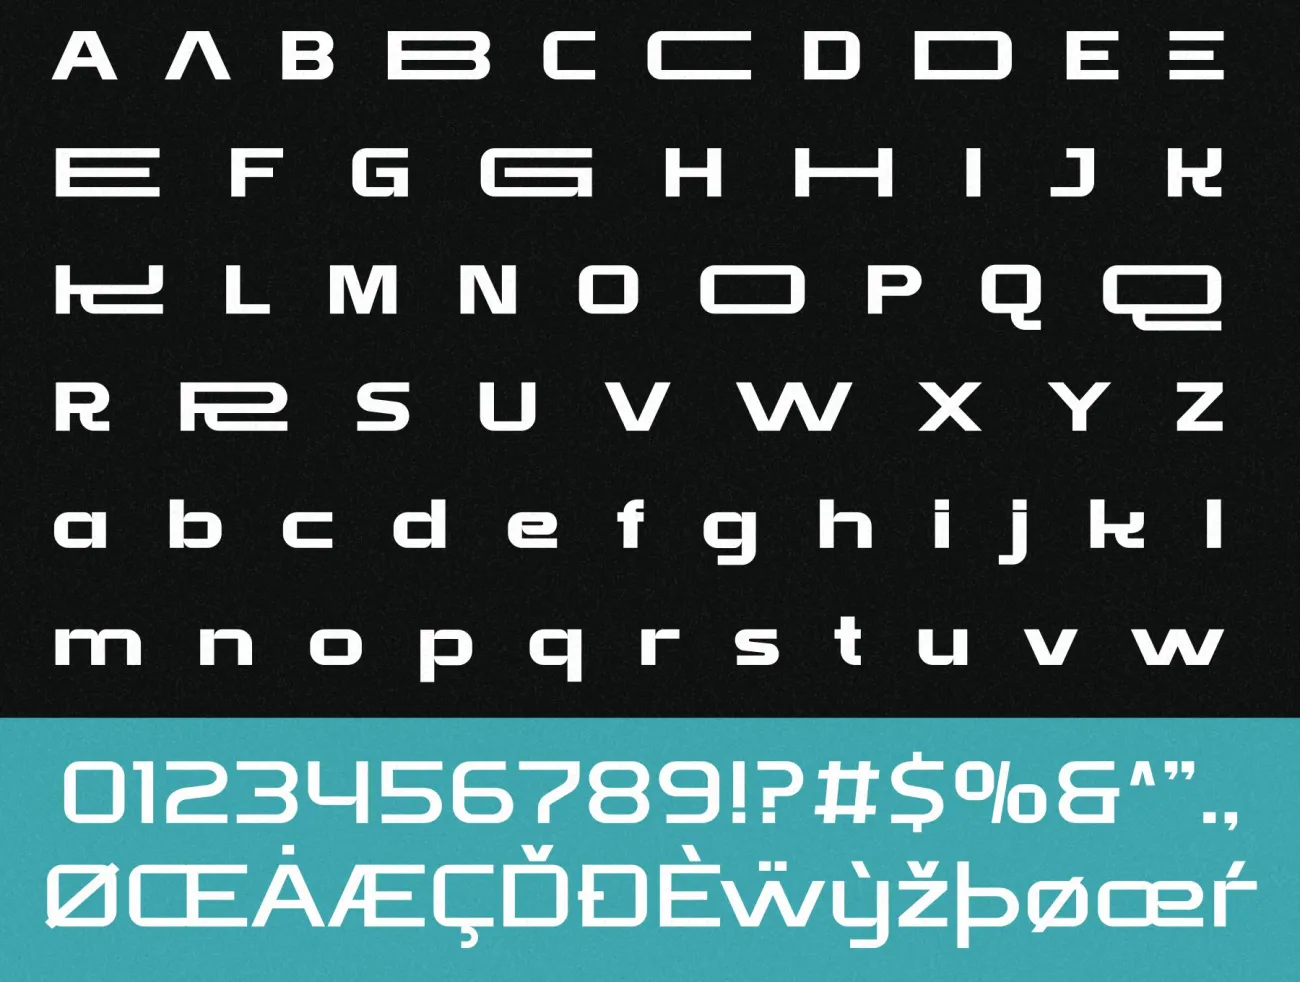 现代潮流科技非等宽无衬线英文字体集5款 Brate - Family Display Typeface .ttf .otf-字体-到位啦UI